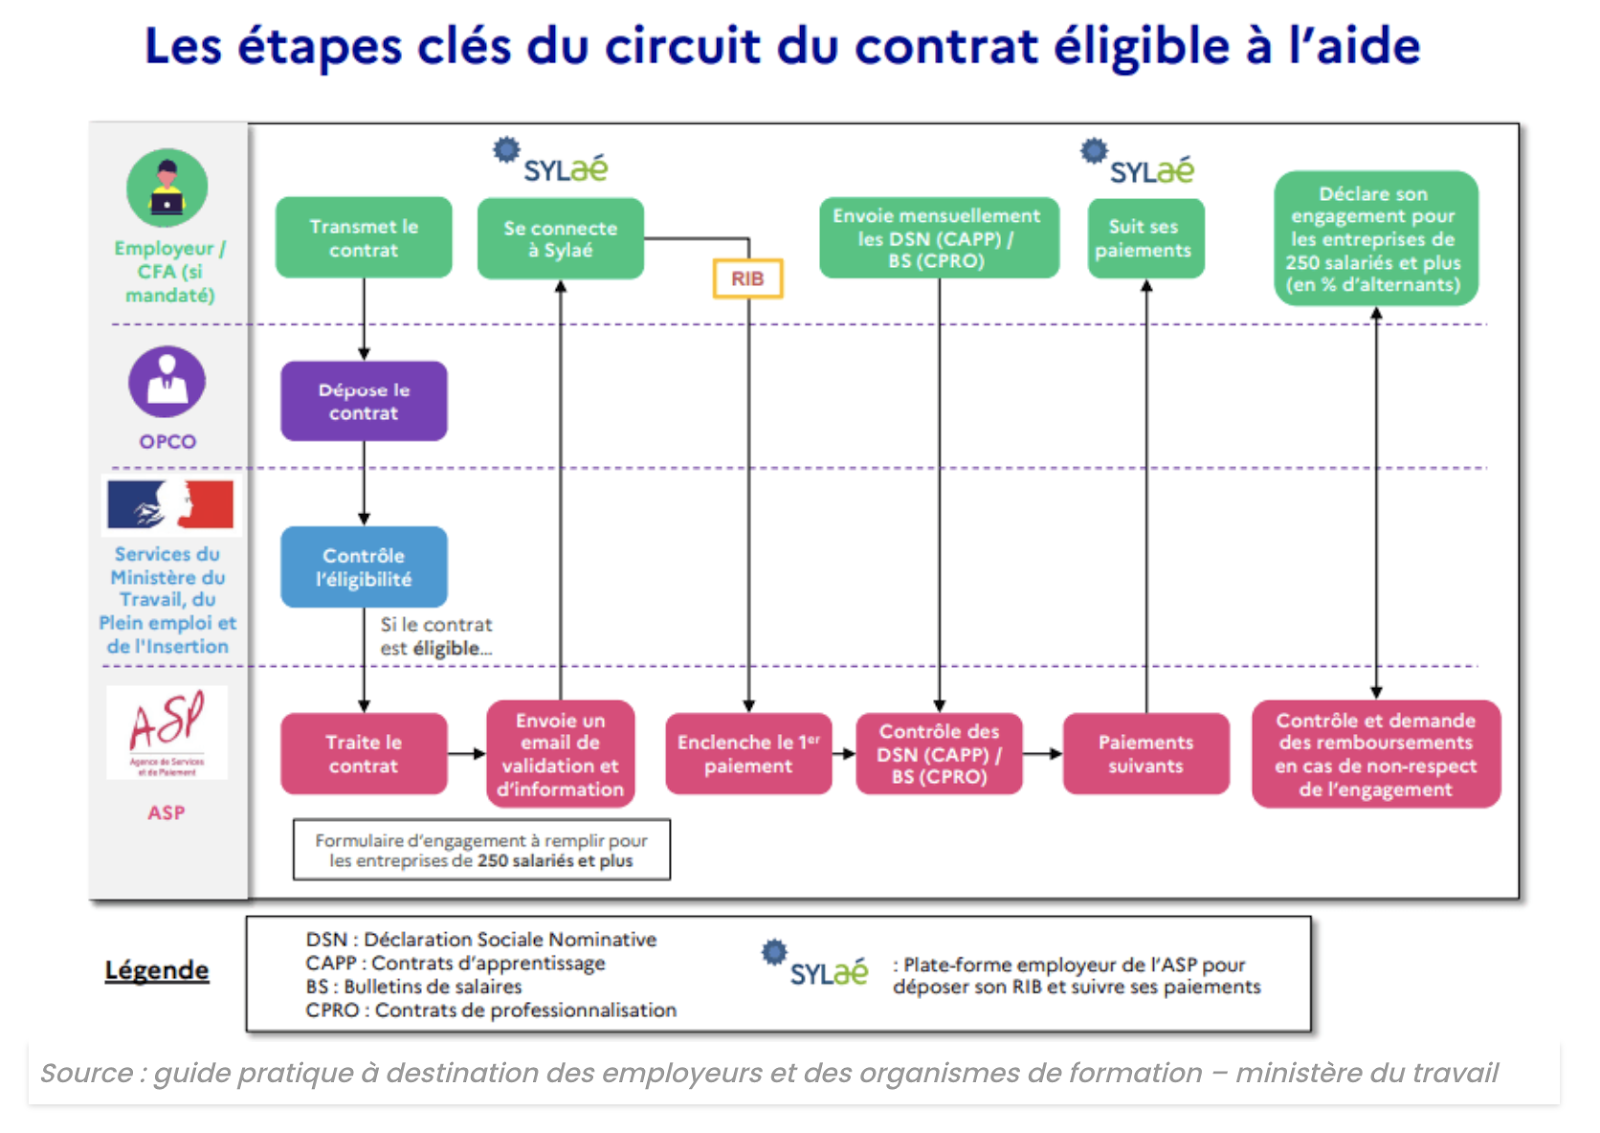 les etapes clés du circuit du contrat eligible à l'aide à 'embauche en alternance